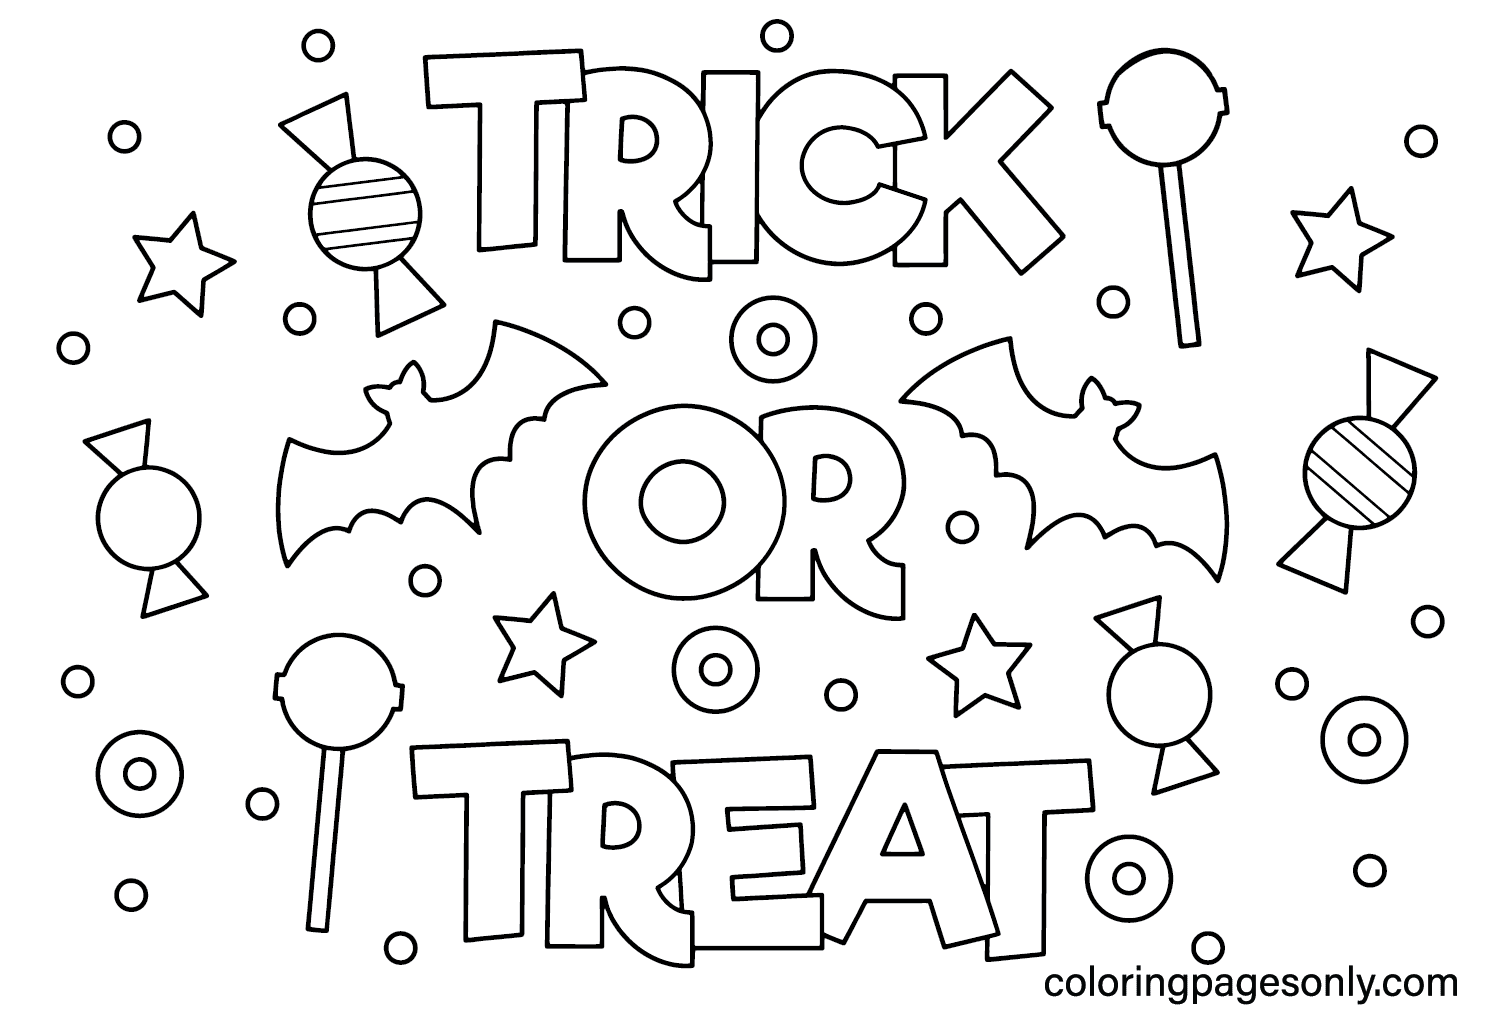 Trick or Treat kleurenpagina van Happy Halloween